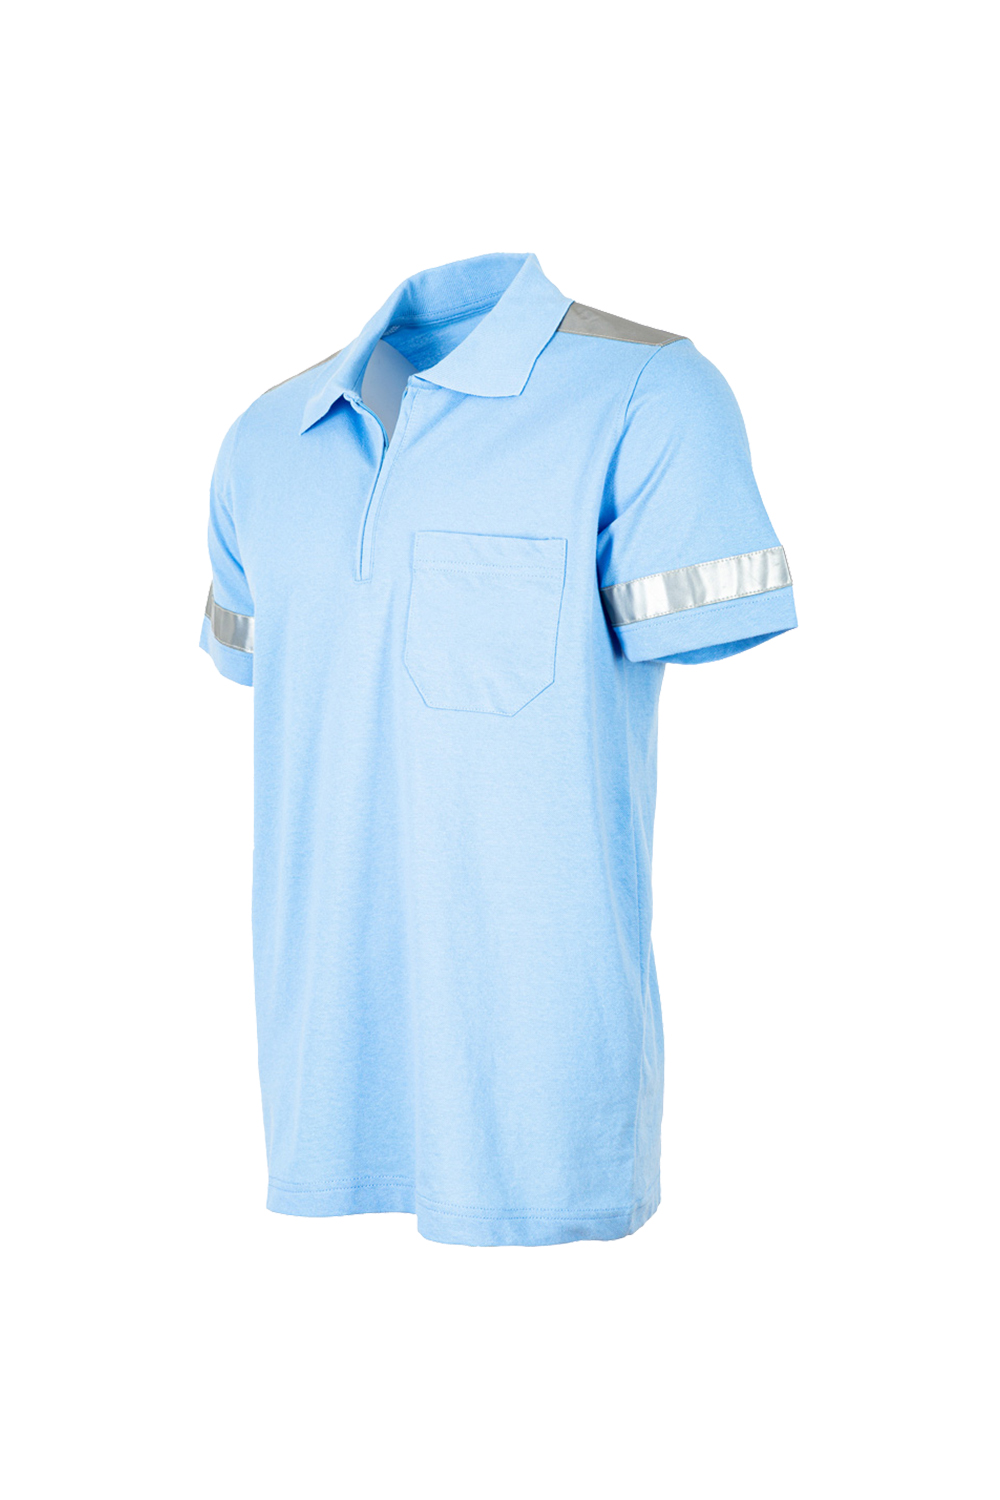 Reflektörlü Polo Yaka Tişört / Polo Yaka Tişört / İş Kıyafetleri